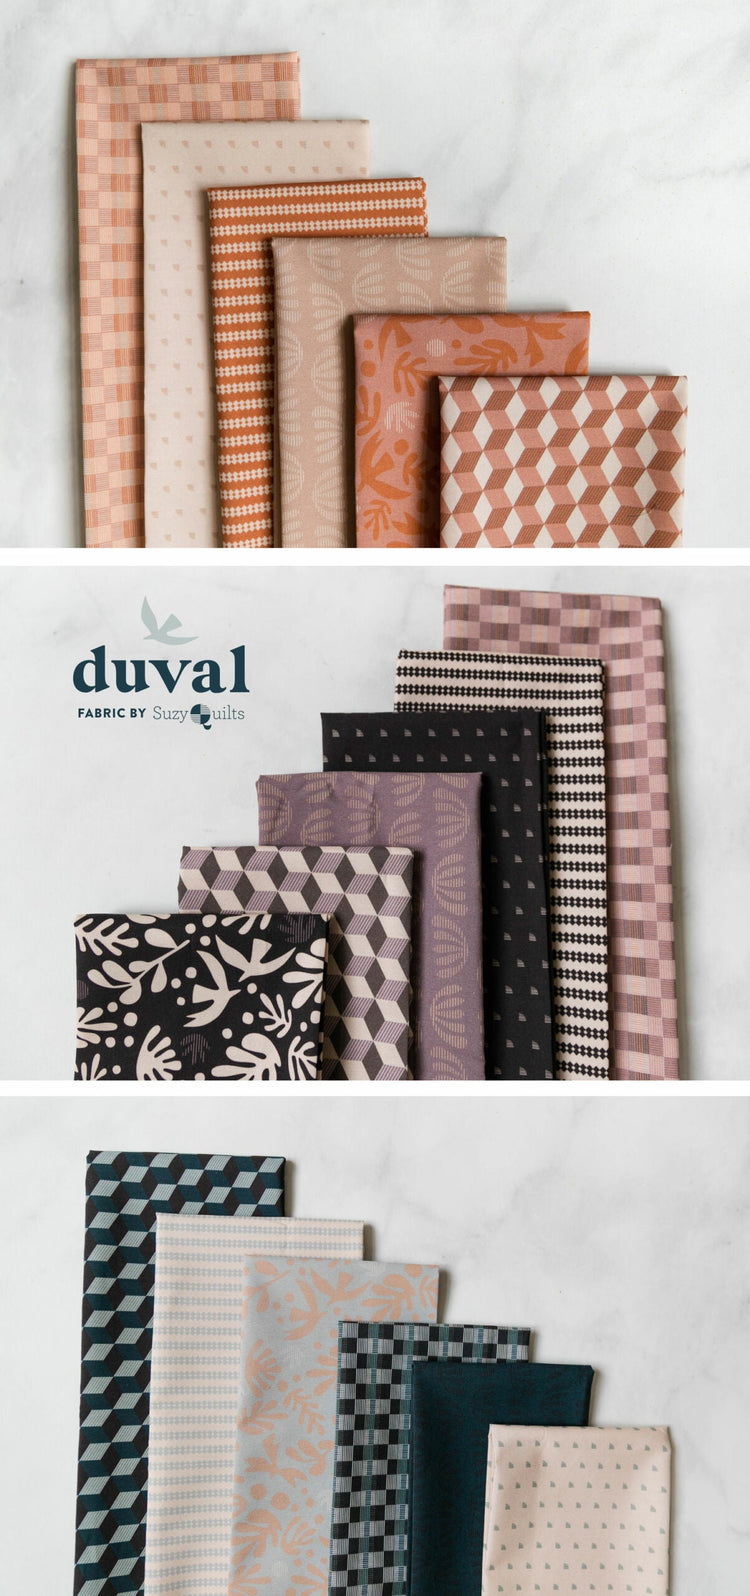 Art Gallery Fabrics - Duval By Suzy Quilts - Tiny Moon Truffle